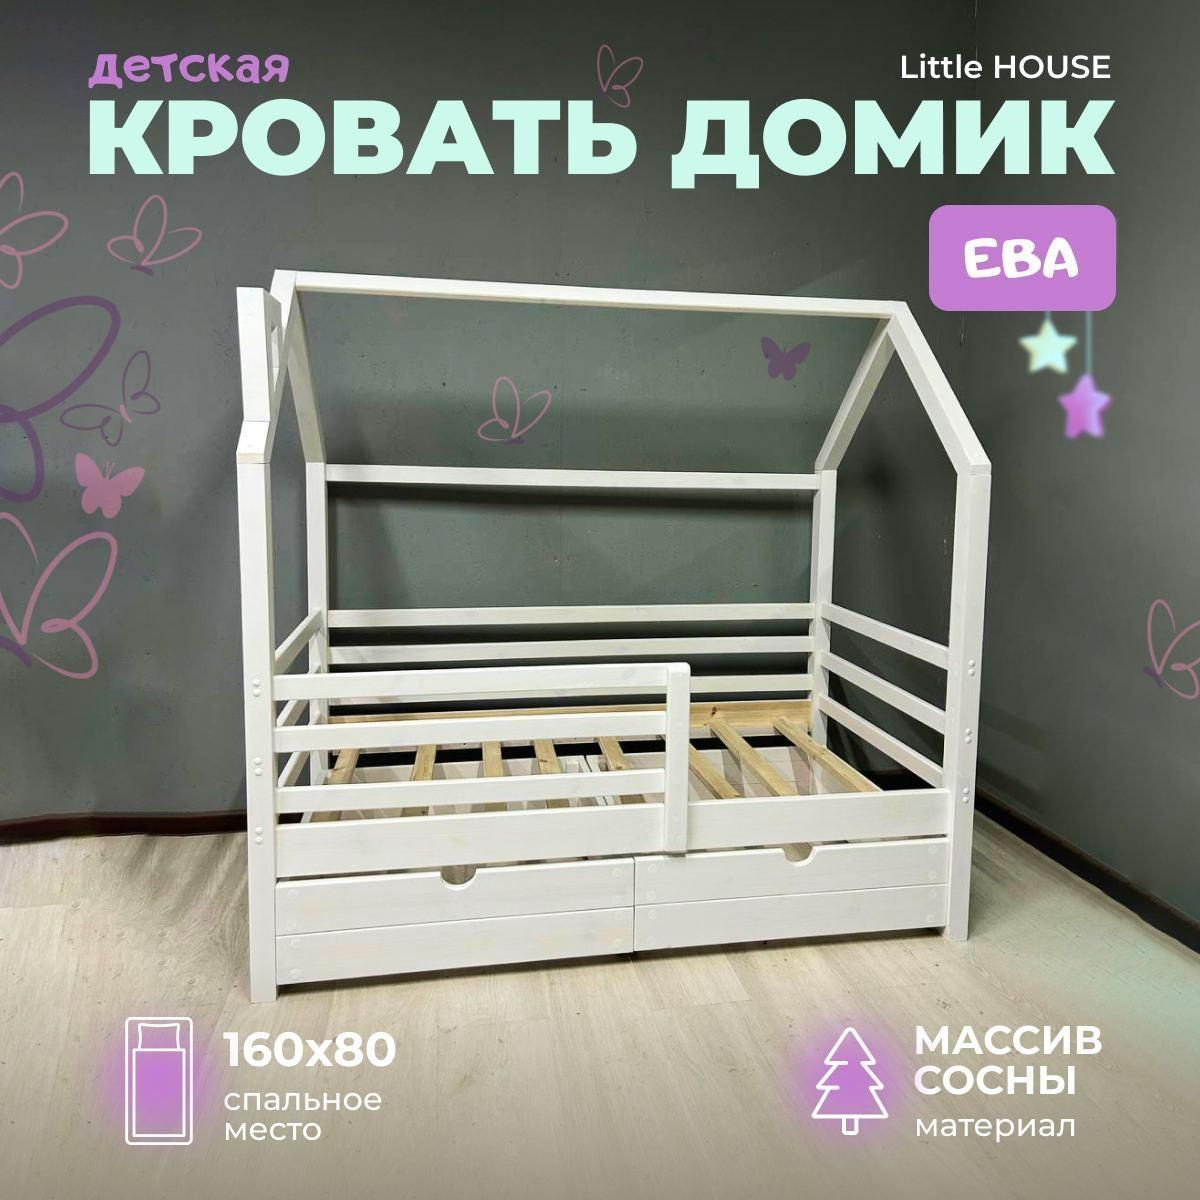 Кровать домик Ева